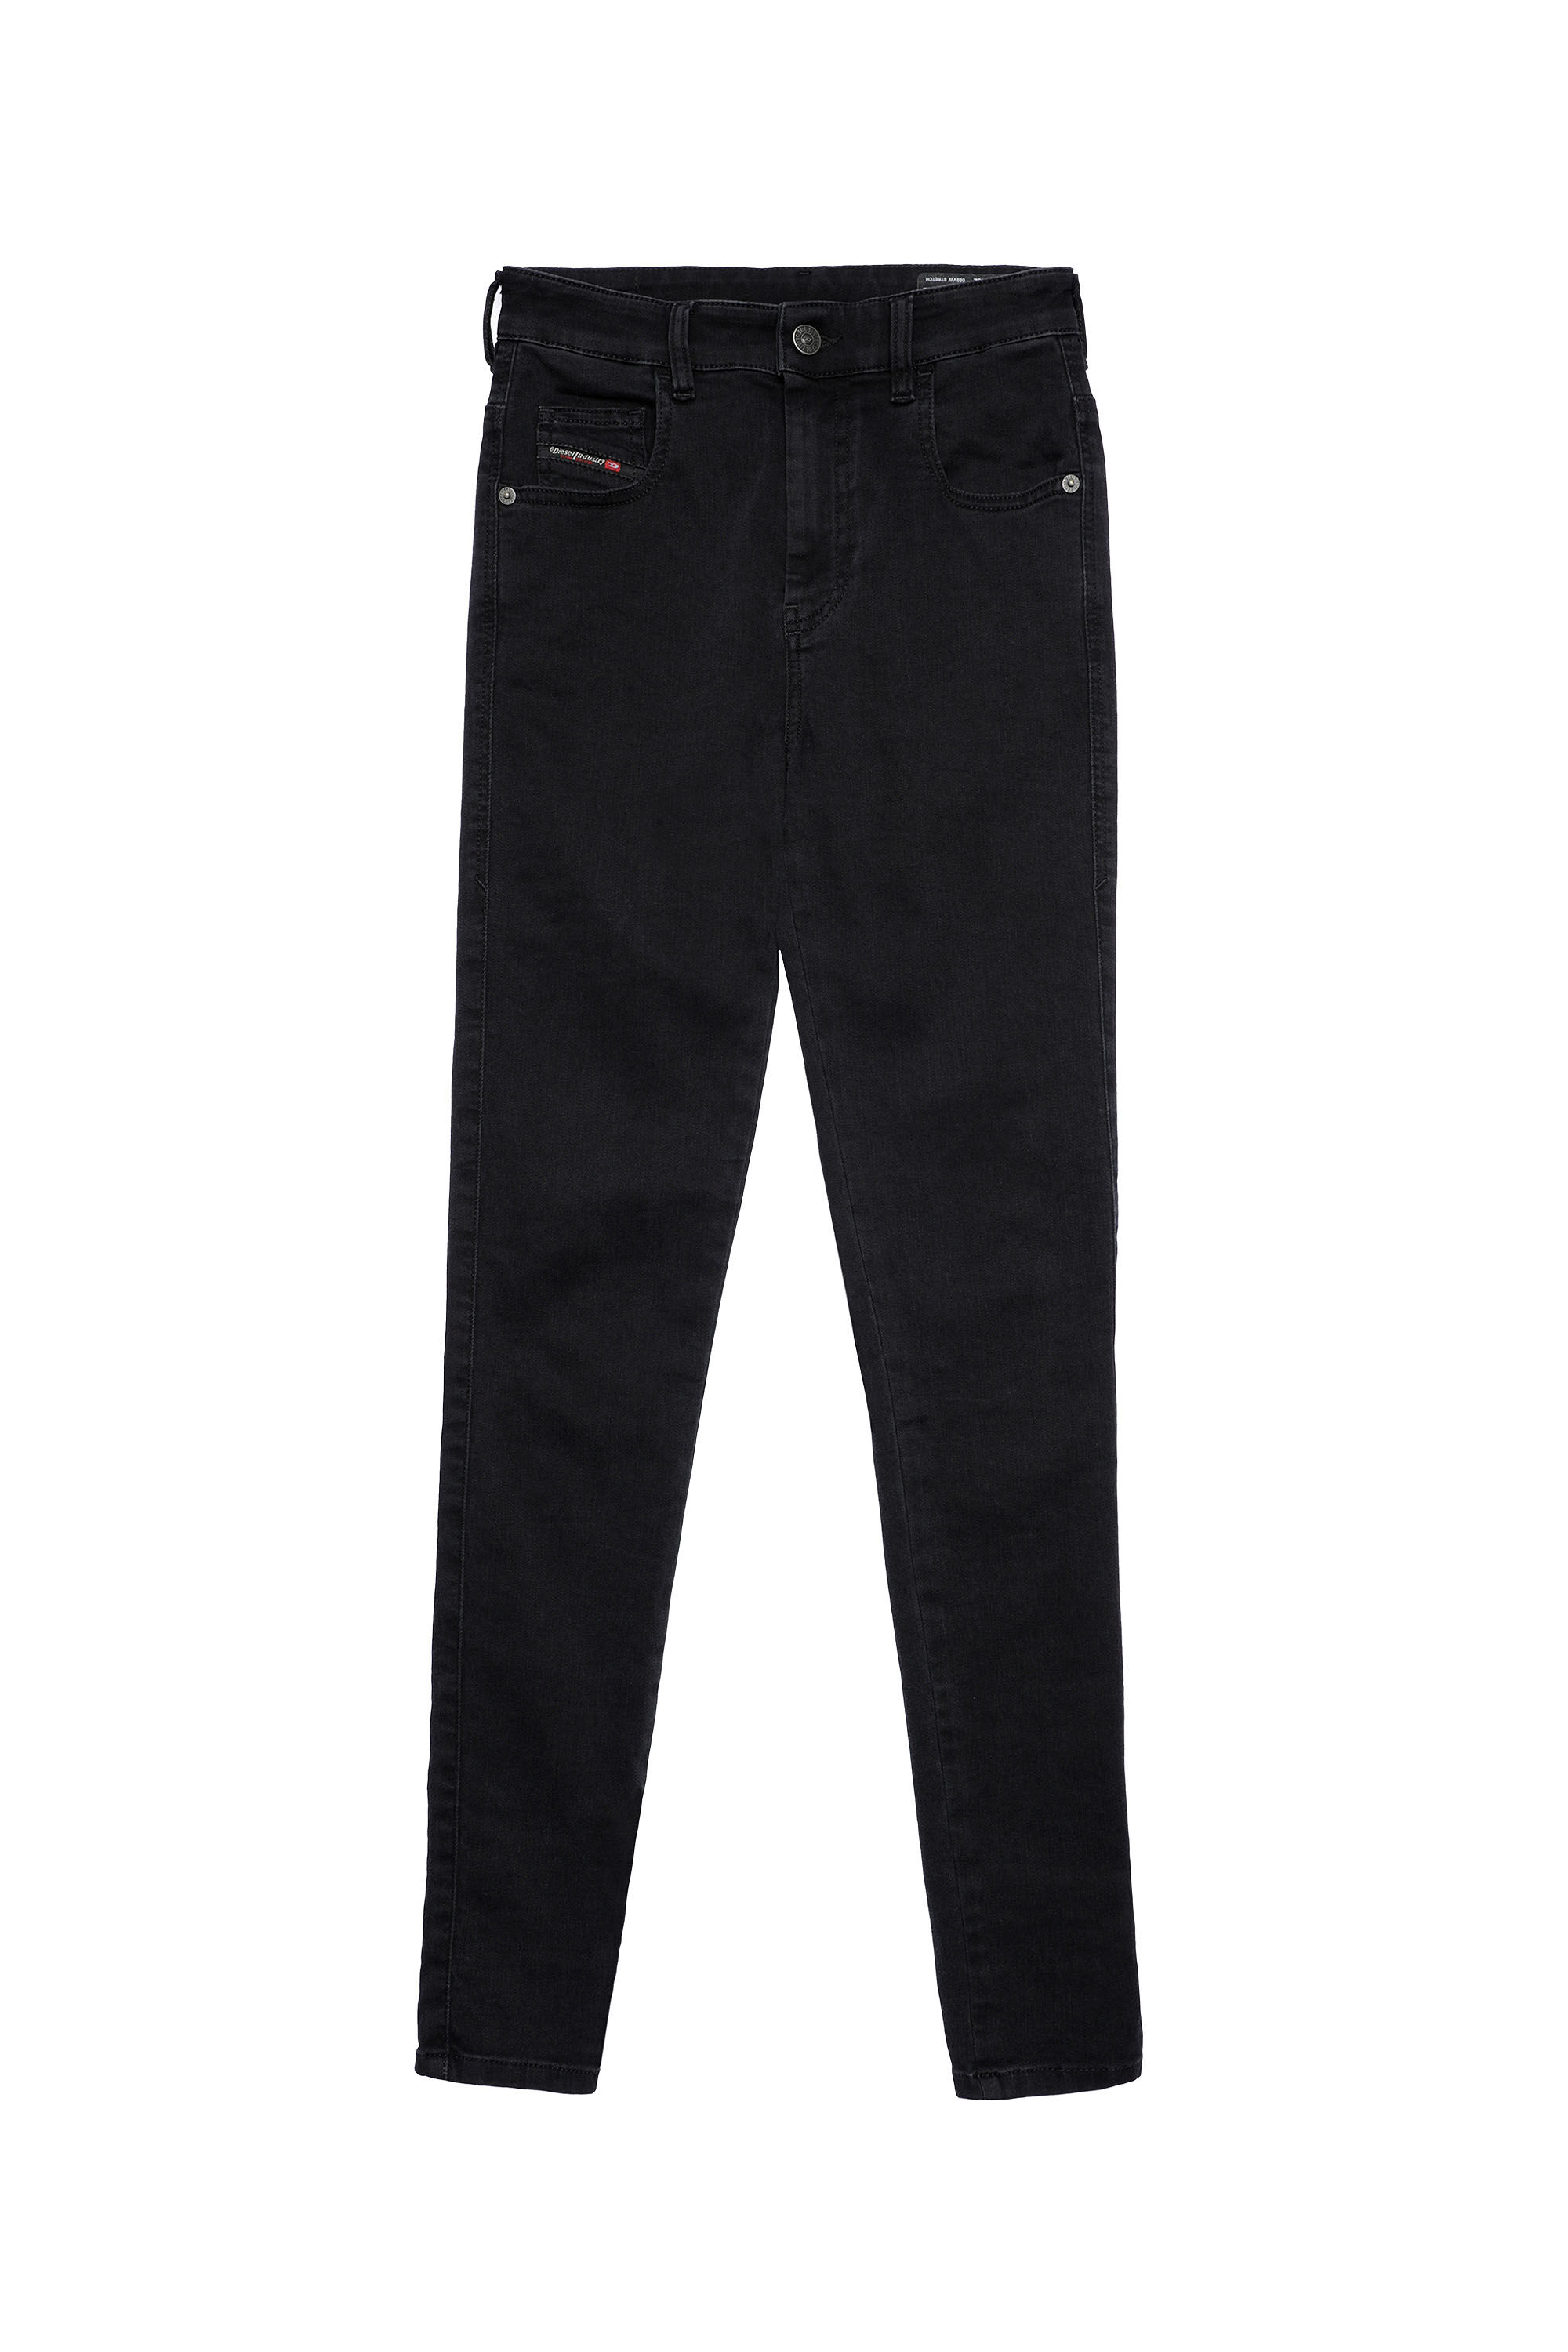 Diesel - Slandy High Skinny Jeans 069VW, Black/Dark Grey - Image 2